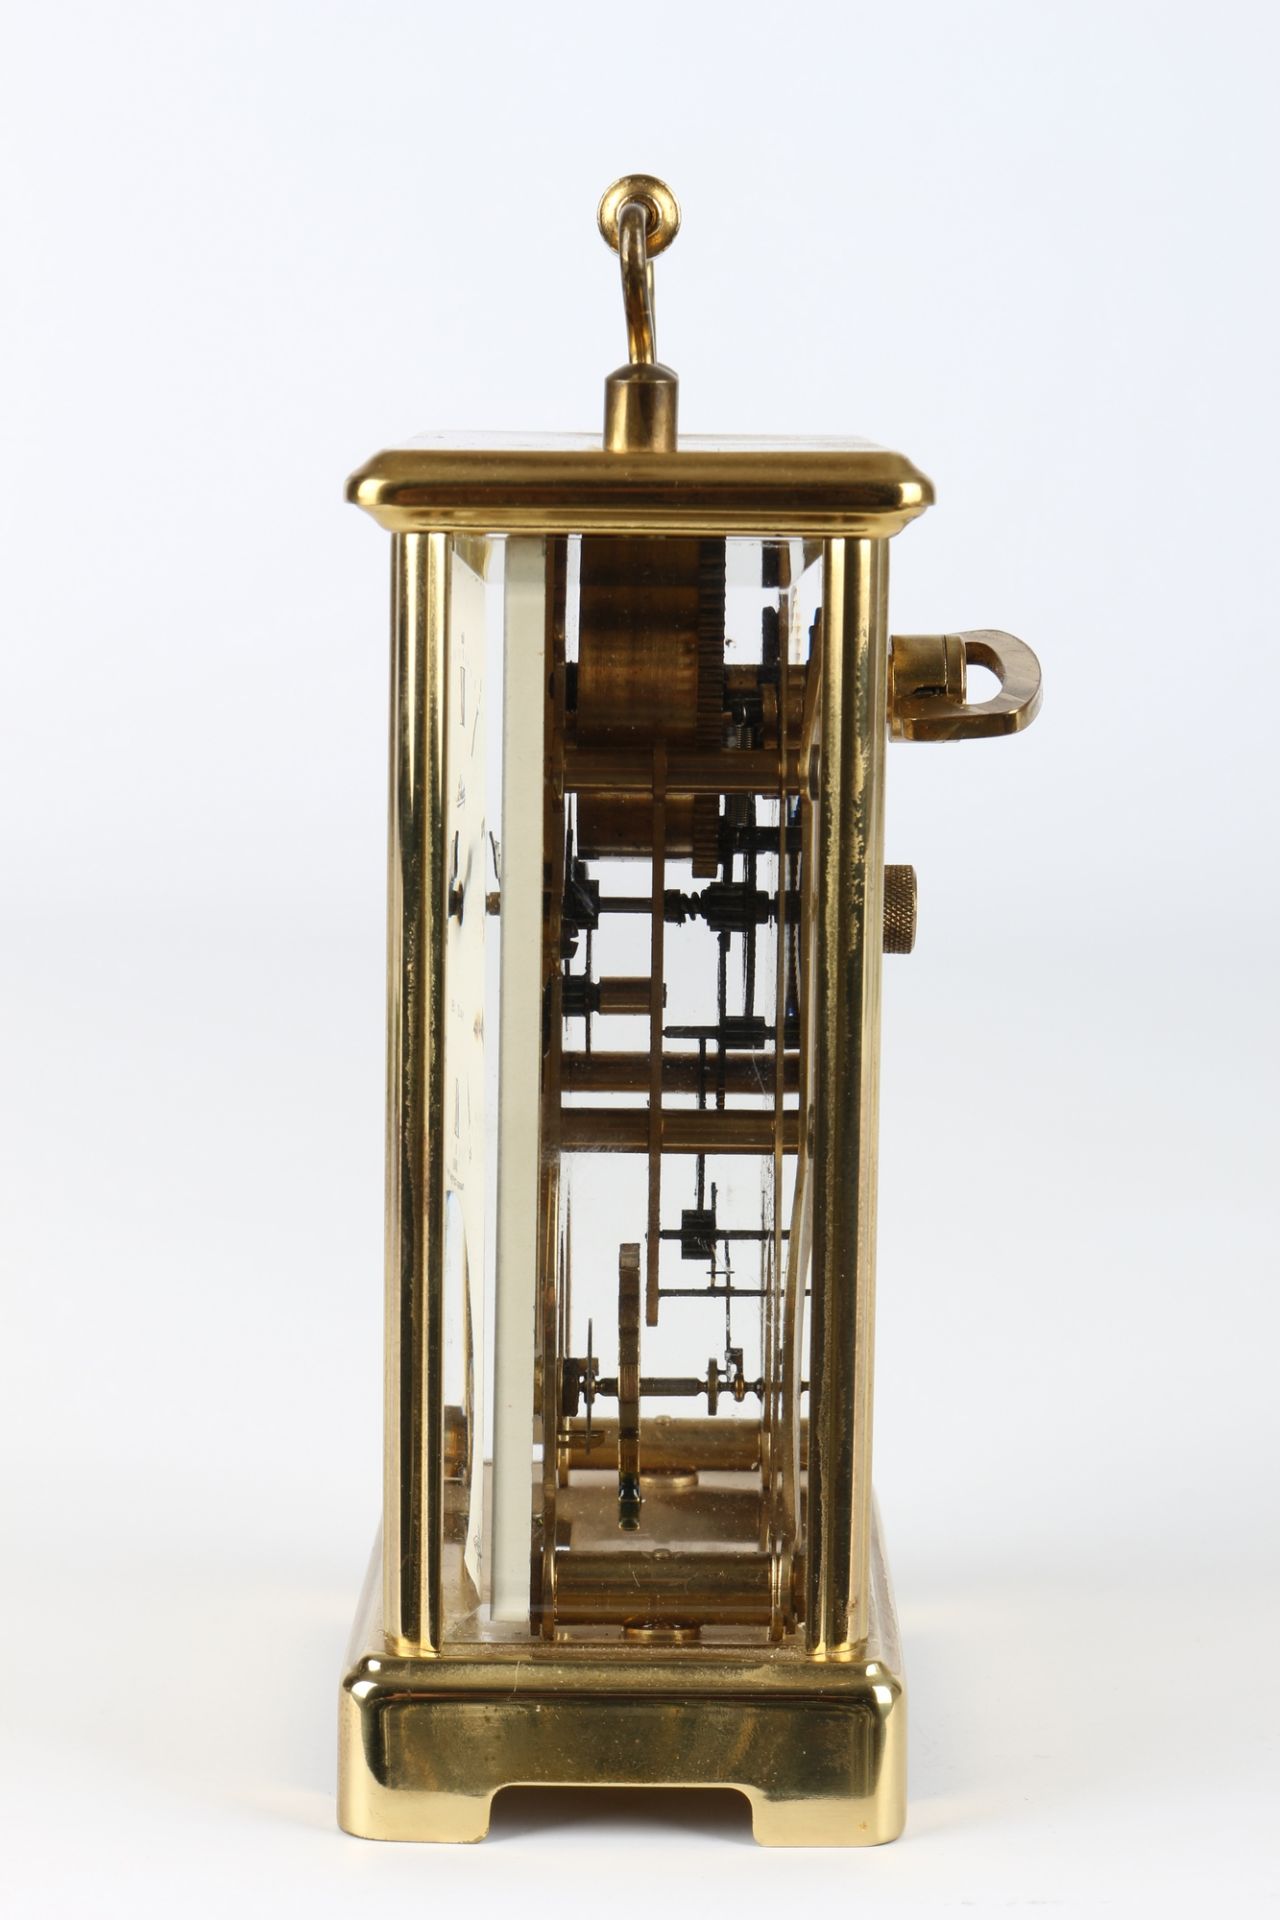 August Schatz Reiseuhr, carriage clock, - Bild 2 aus 5